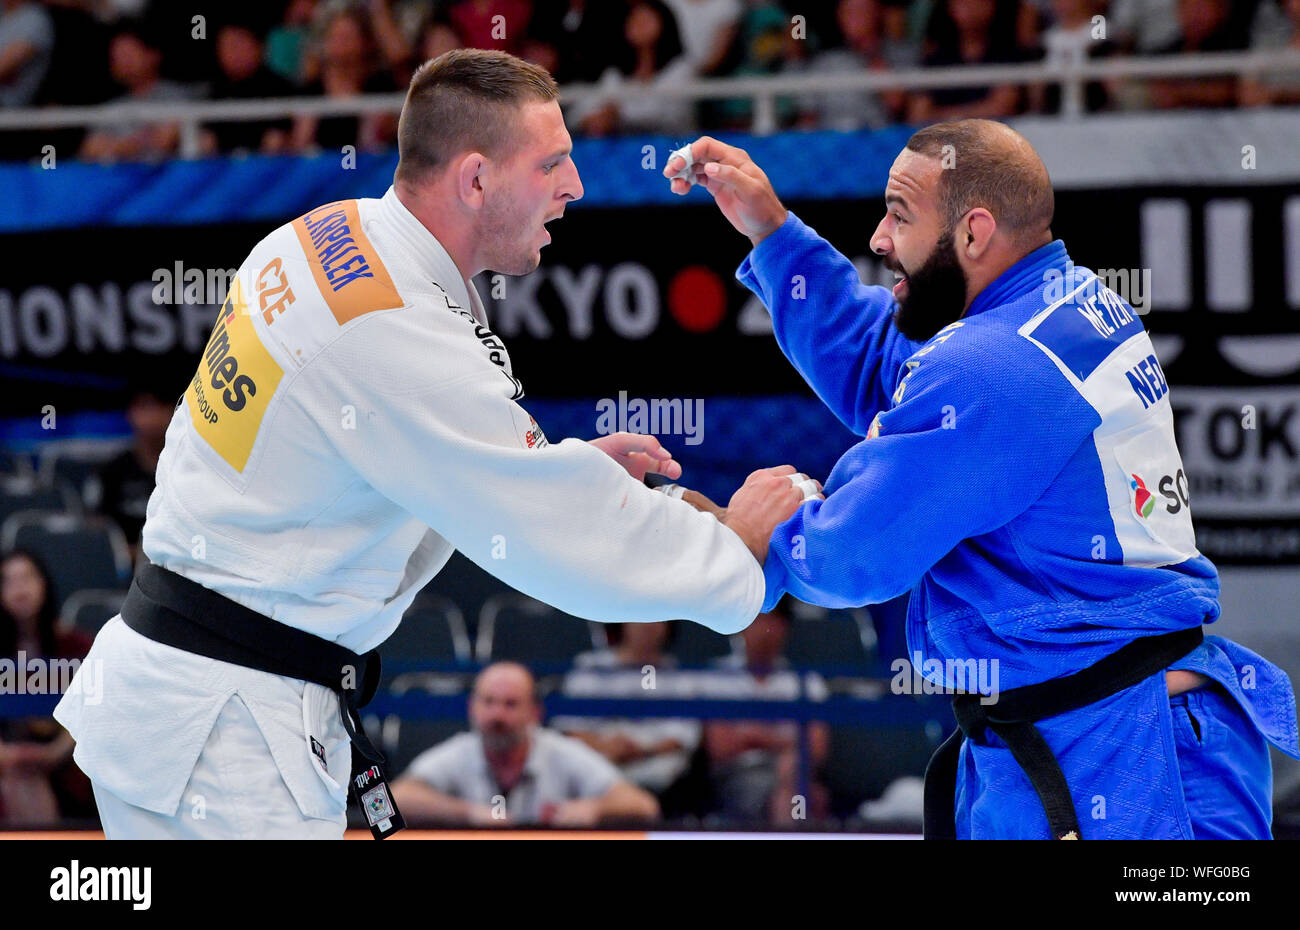 Tokyo, Japon. Août 31, 2019. Le judoka poids lourd Tchèque Lukas Krpalek (à  gauche) en action au cours de la catégorie hommes 100 match contre Roy  Meyer des Pays-Bas au Championnat du